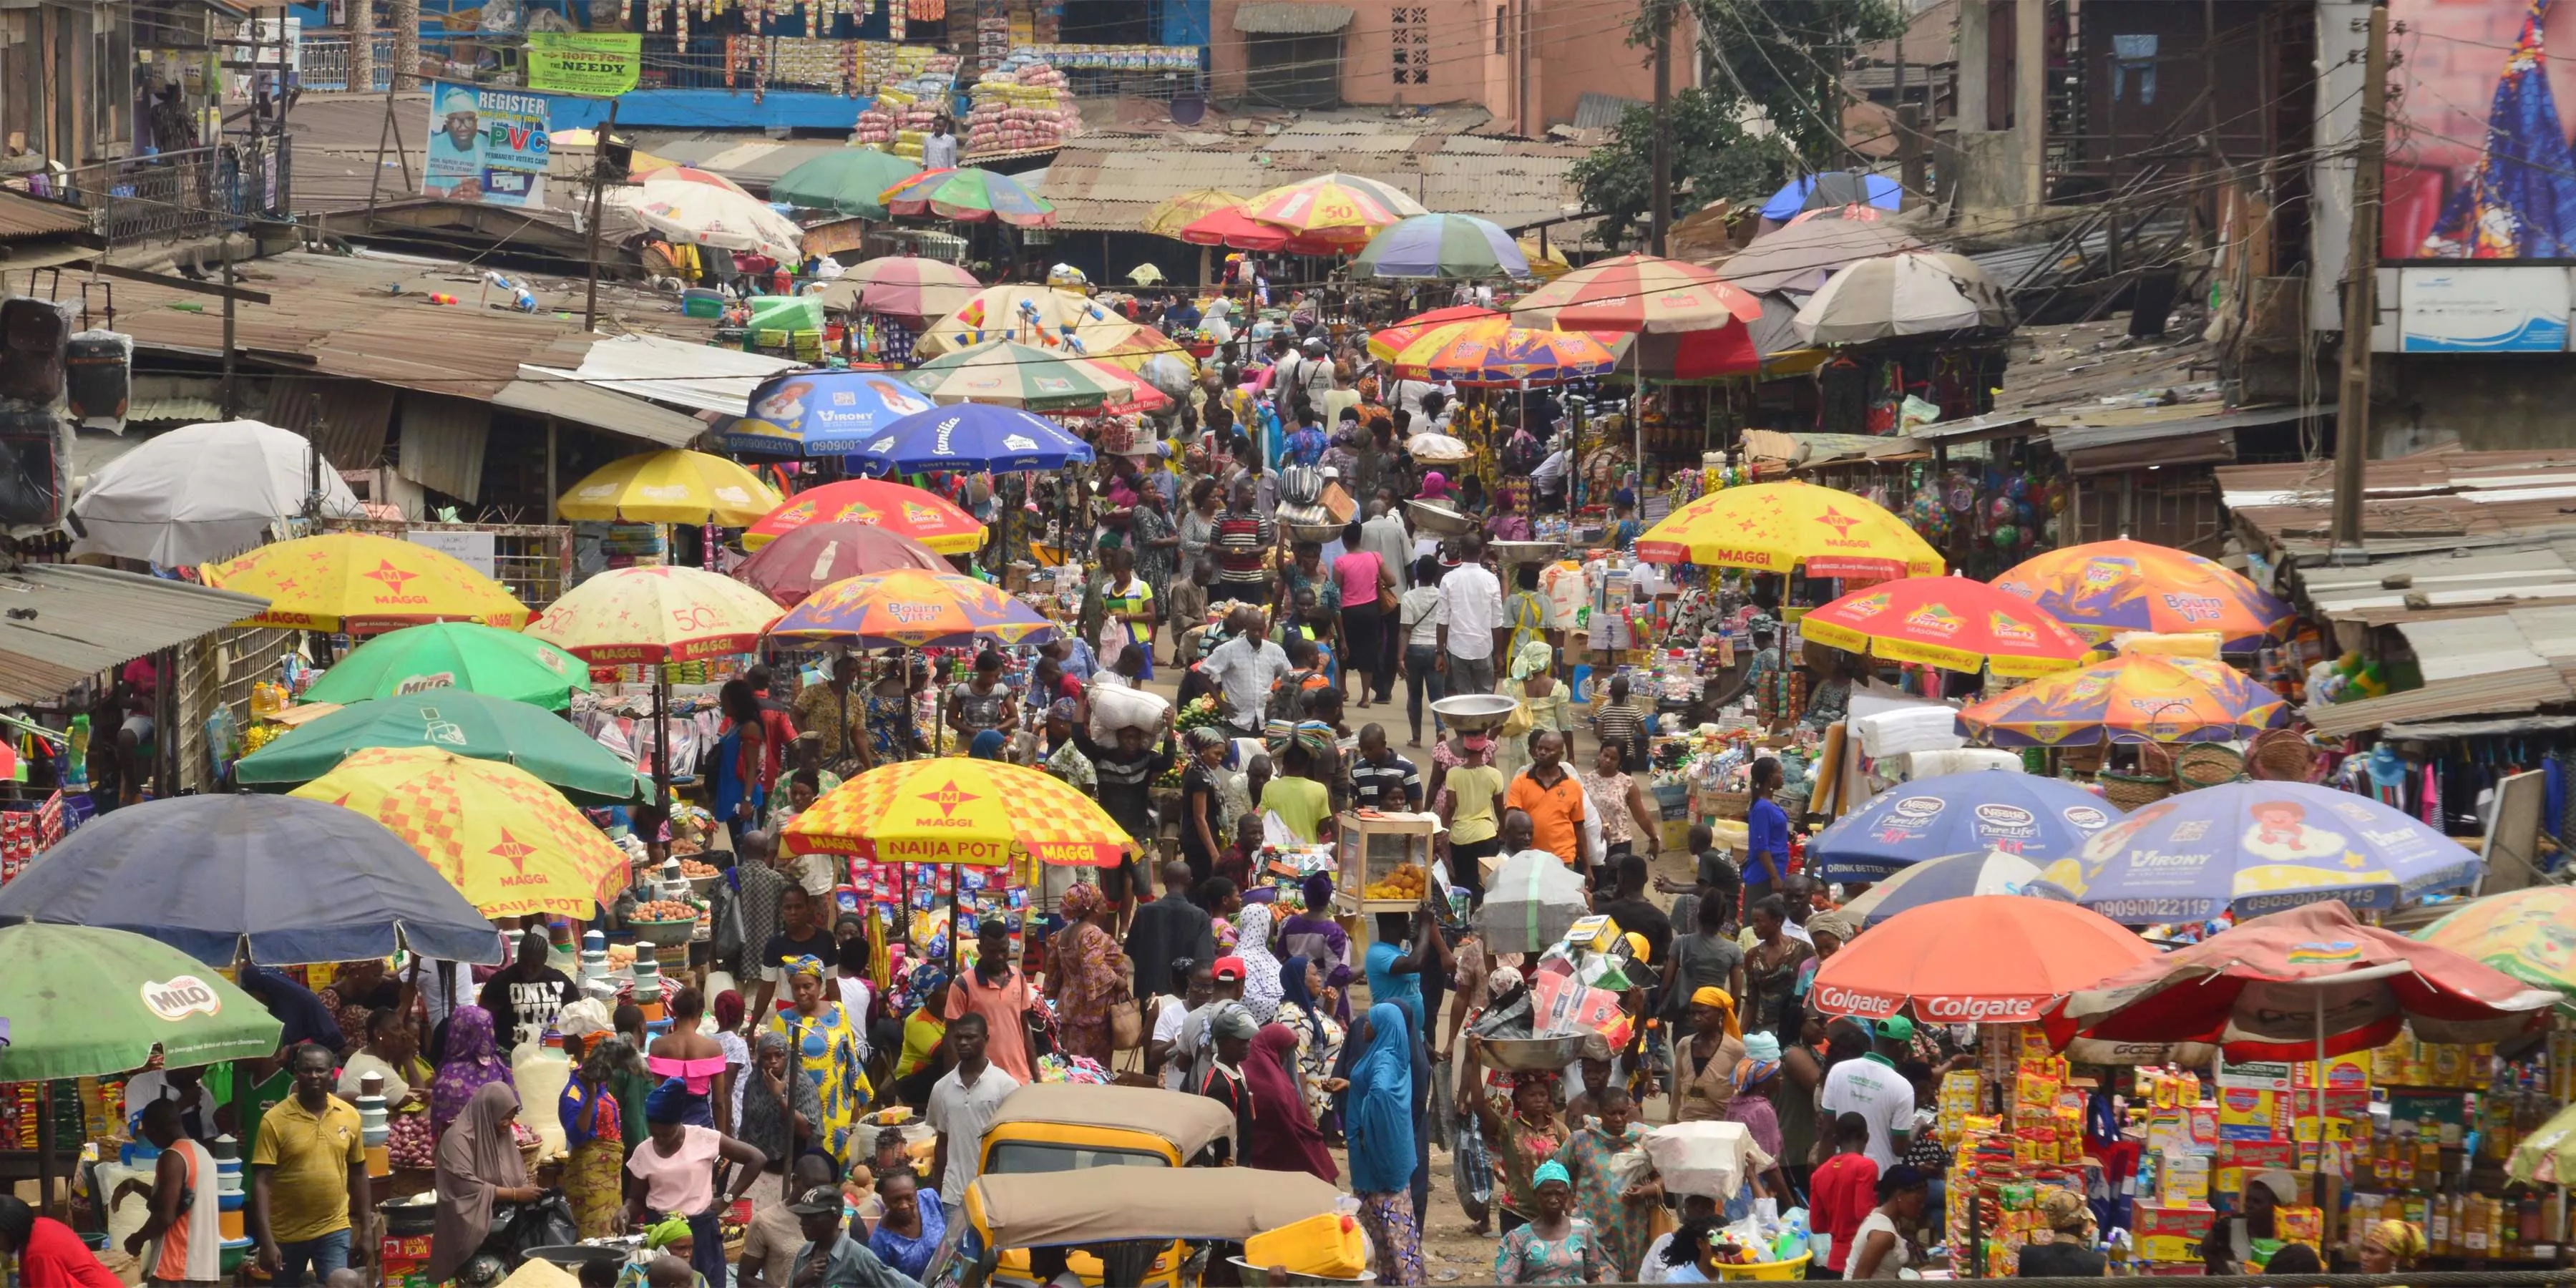 Mushin_Market_in_Lagos_Nigeria